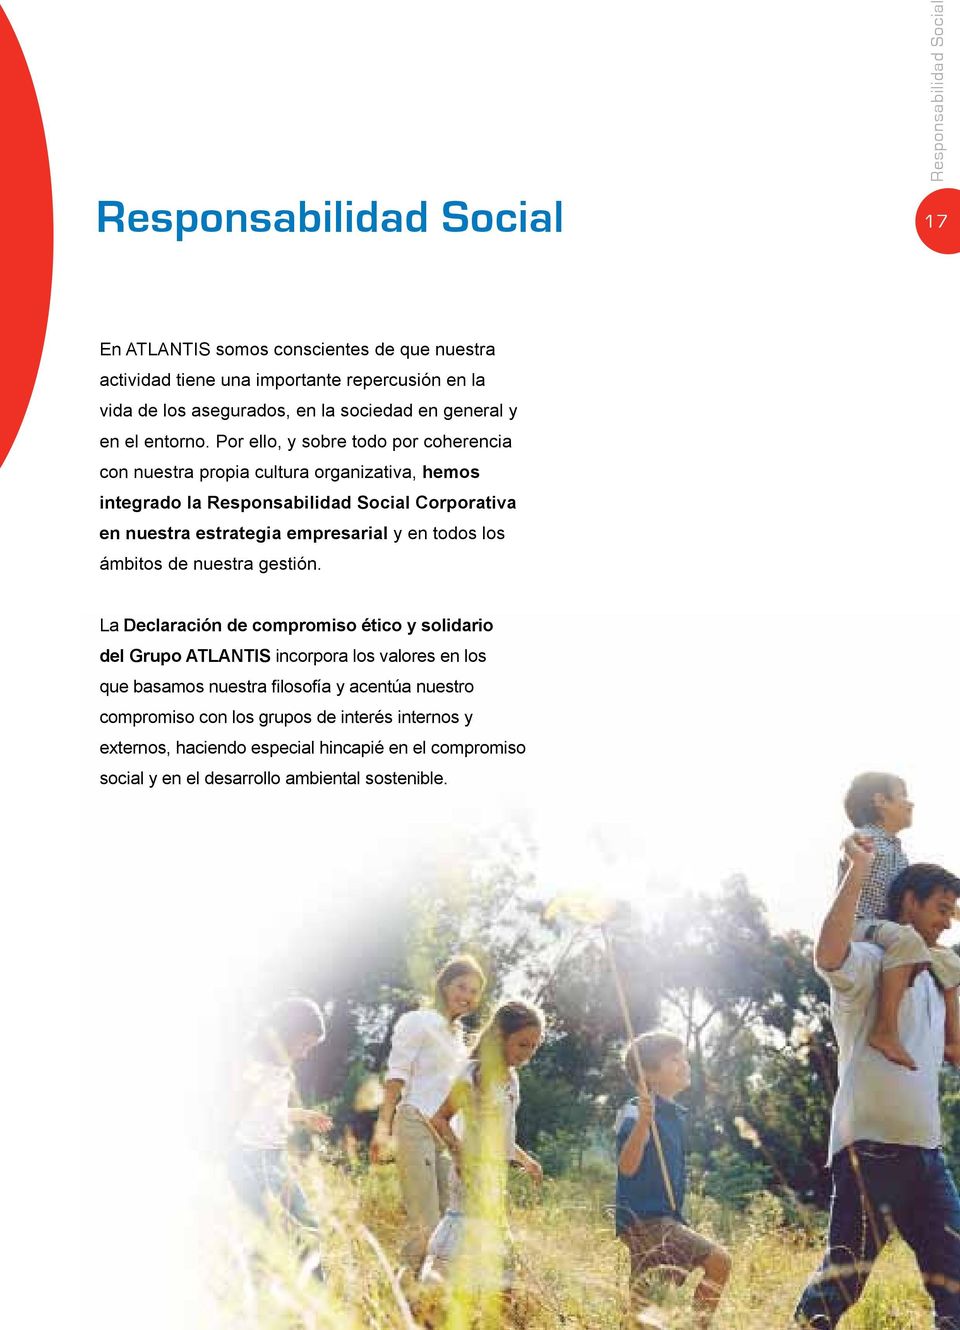 Por ello, y sobre todo por coherencia con nuestra propia cultura organizativa, hemos integrado la Responsabilidad Social Corporativa en nuestra estrategia empresarial y en todos